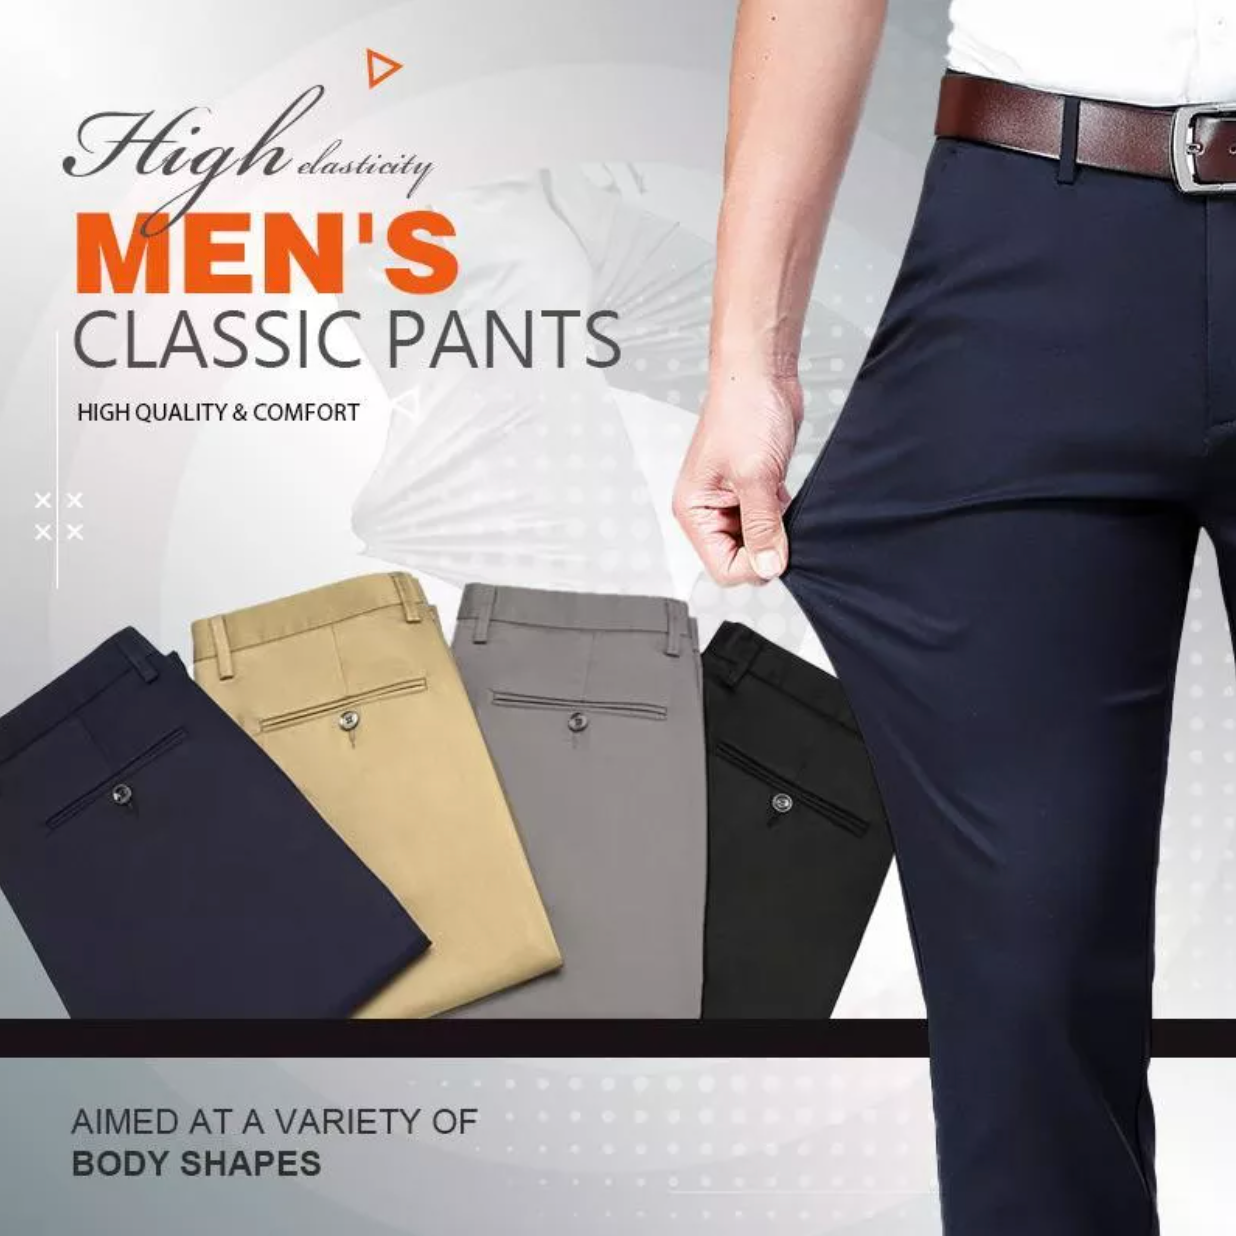 Pantalones elásticos para hombre muy cómodos en varios colores. Se adaptan perfectamente a cualquier tipo de pierna.